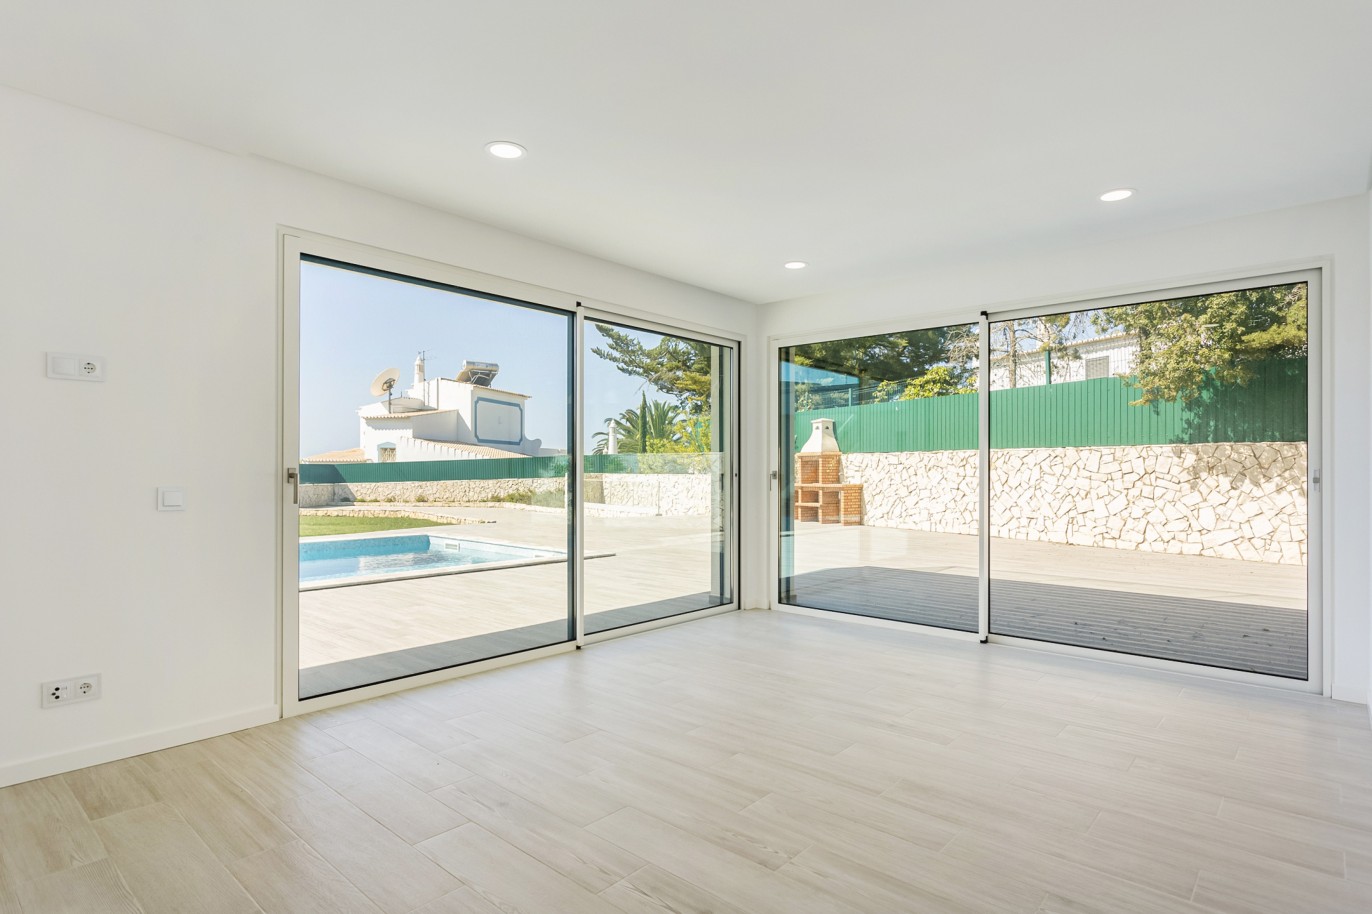 Villa de 4 dormitorios, con piscina, en venta, en Ferragudo, Algarve_222733